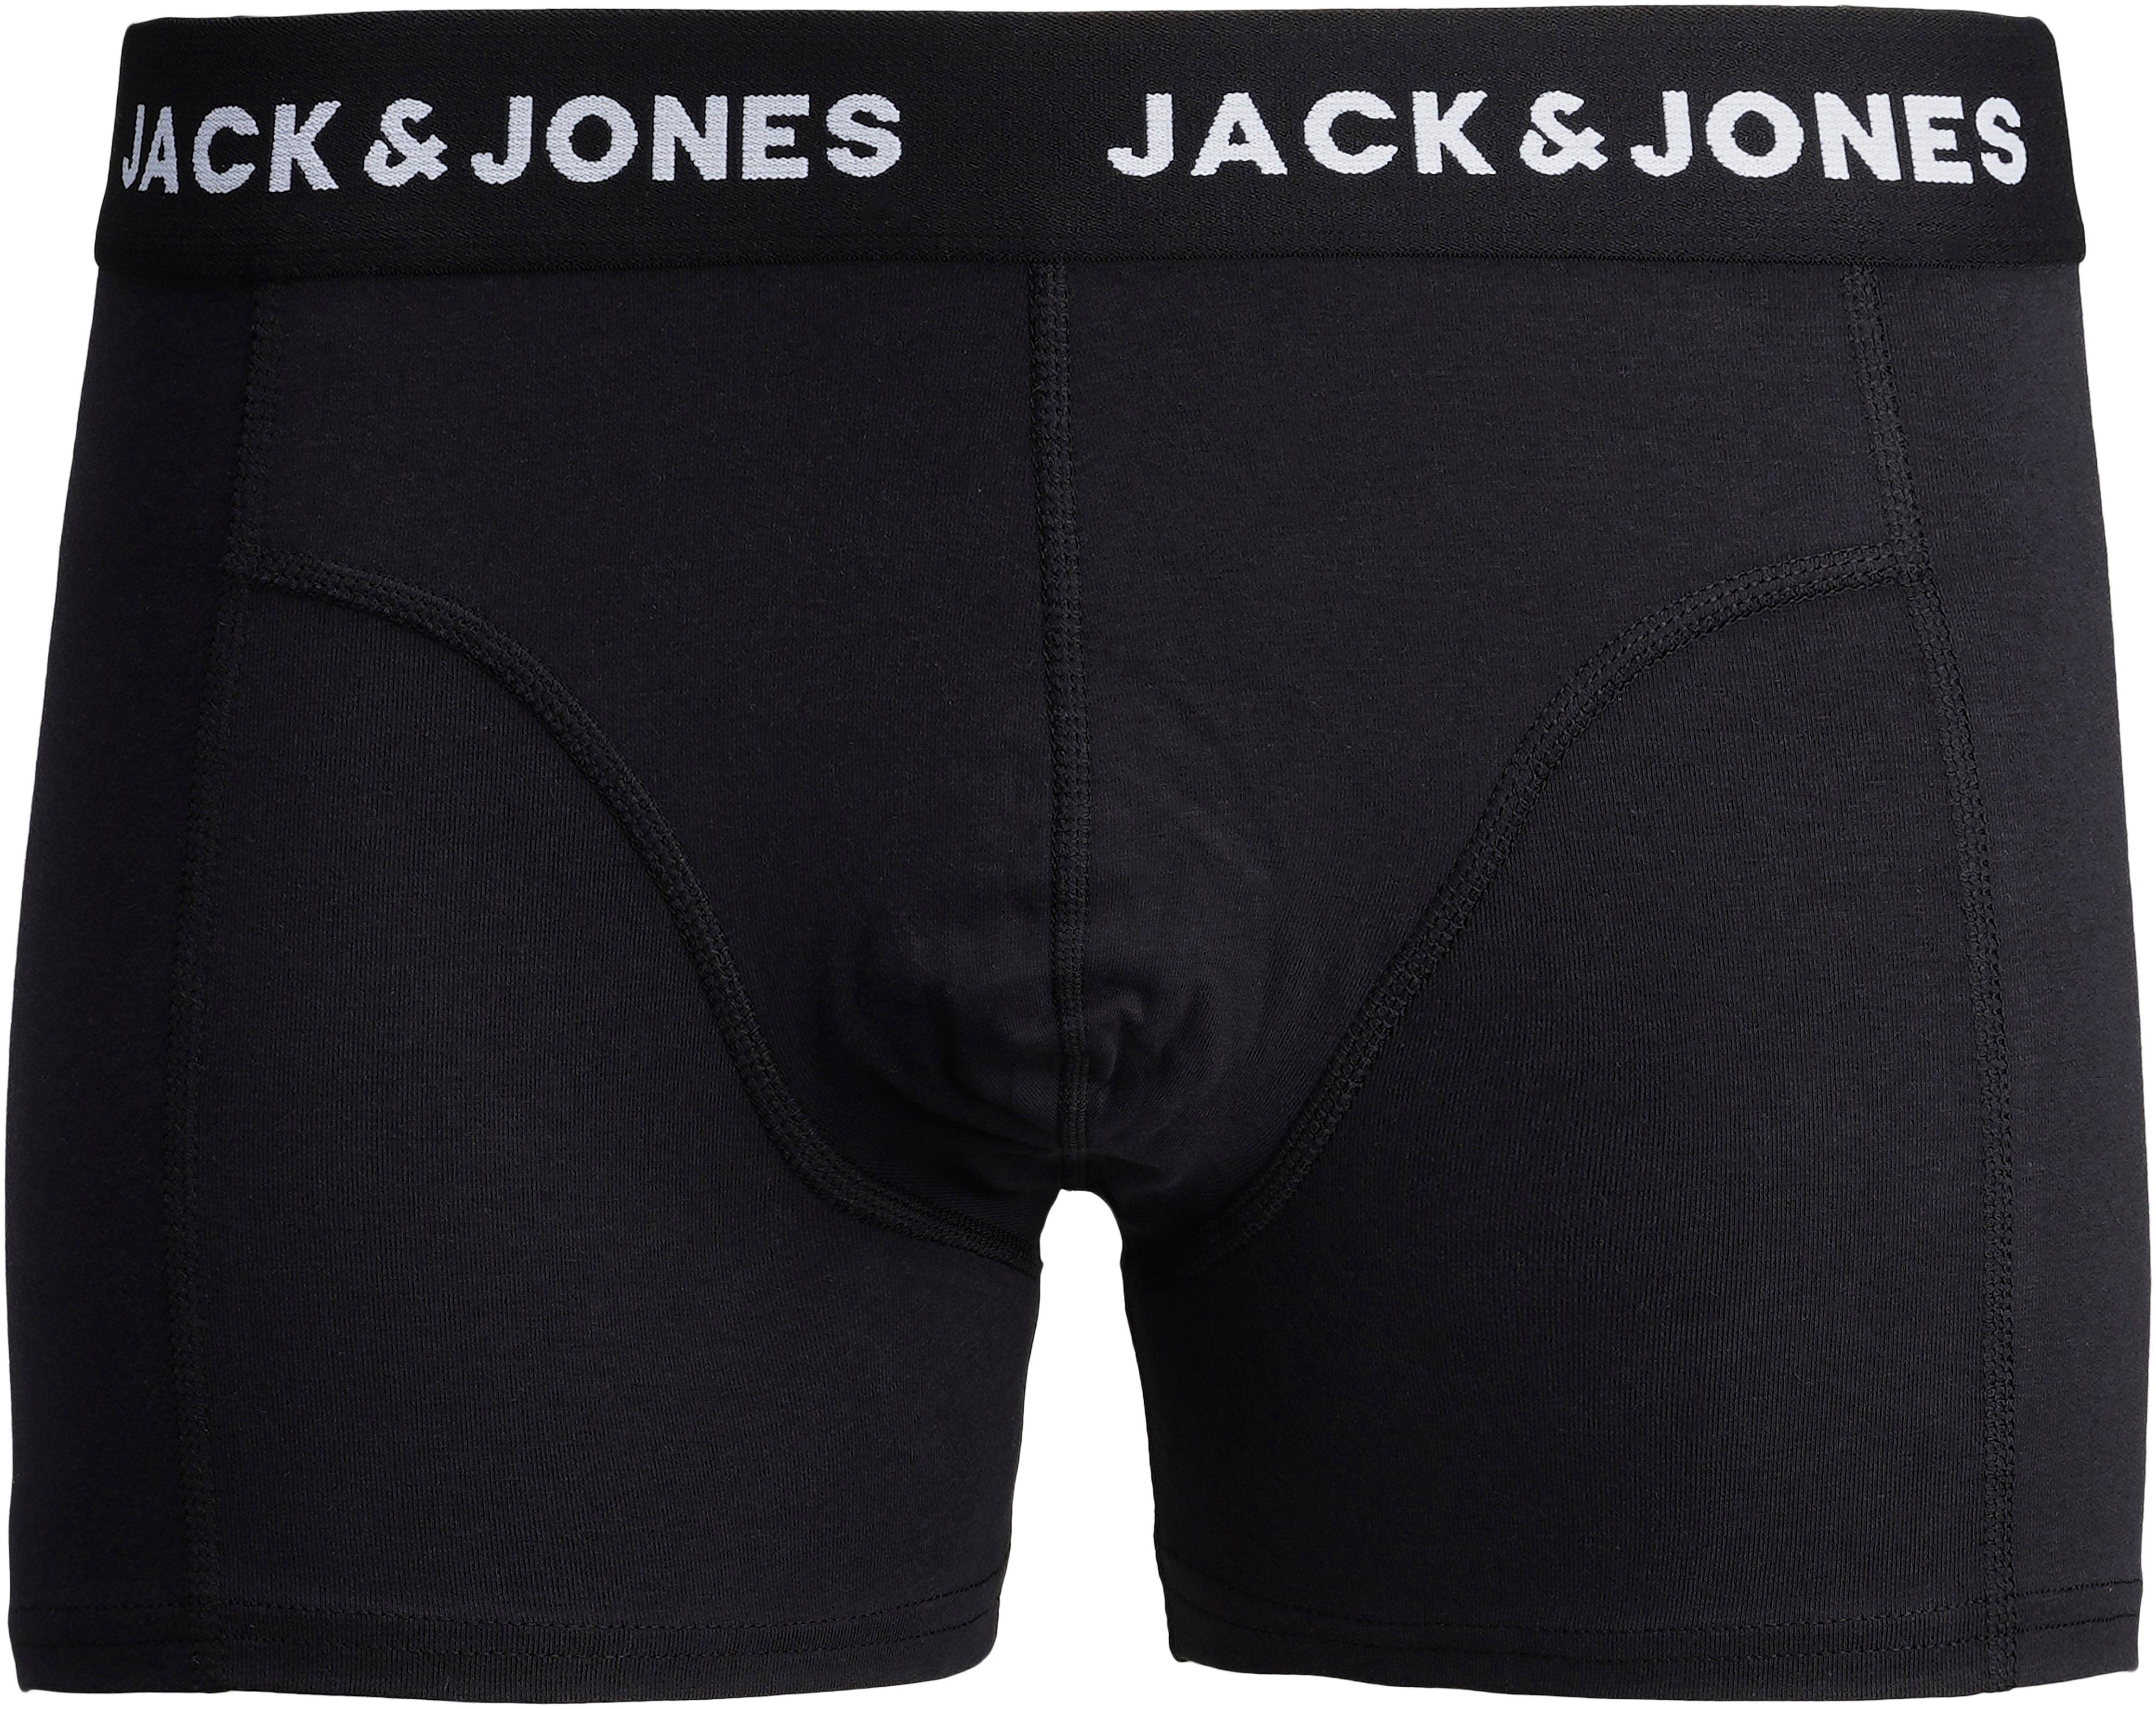 Wäsche/Bademode Unterwäsche Jack & Jones Junior Boxershorts in melierter Optik (3 Stück)